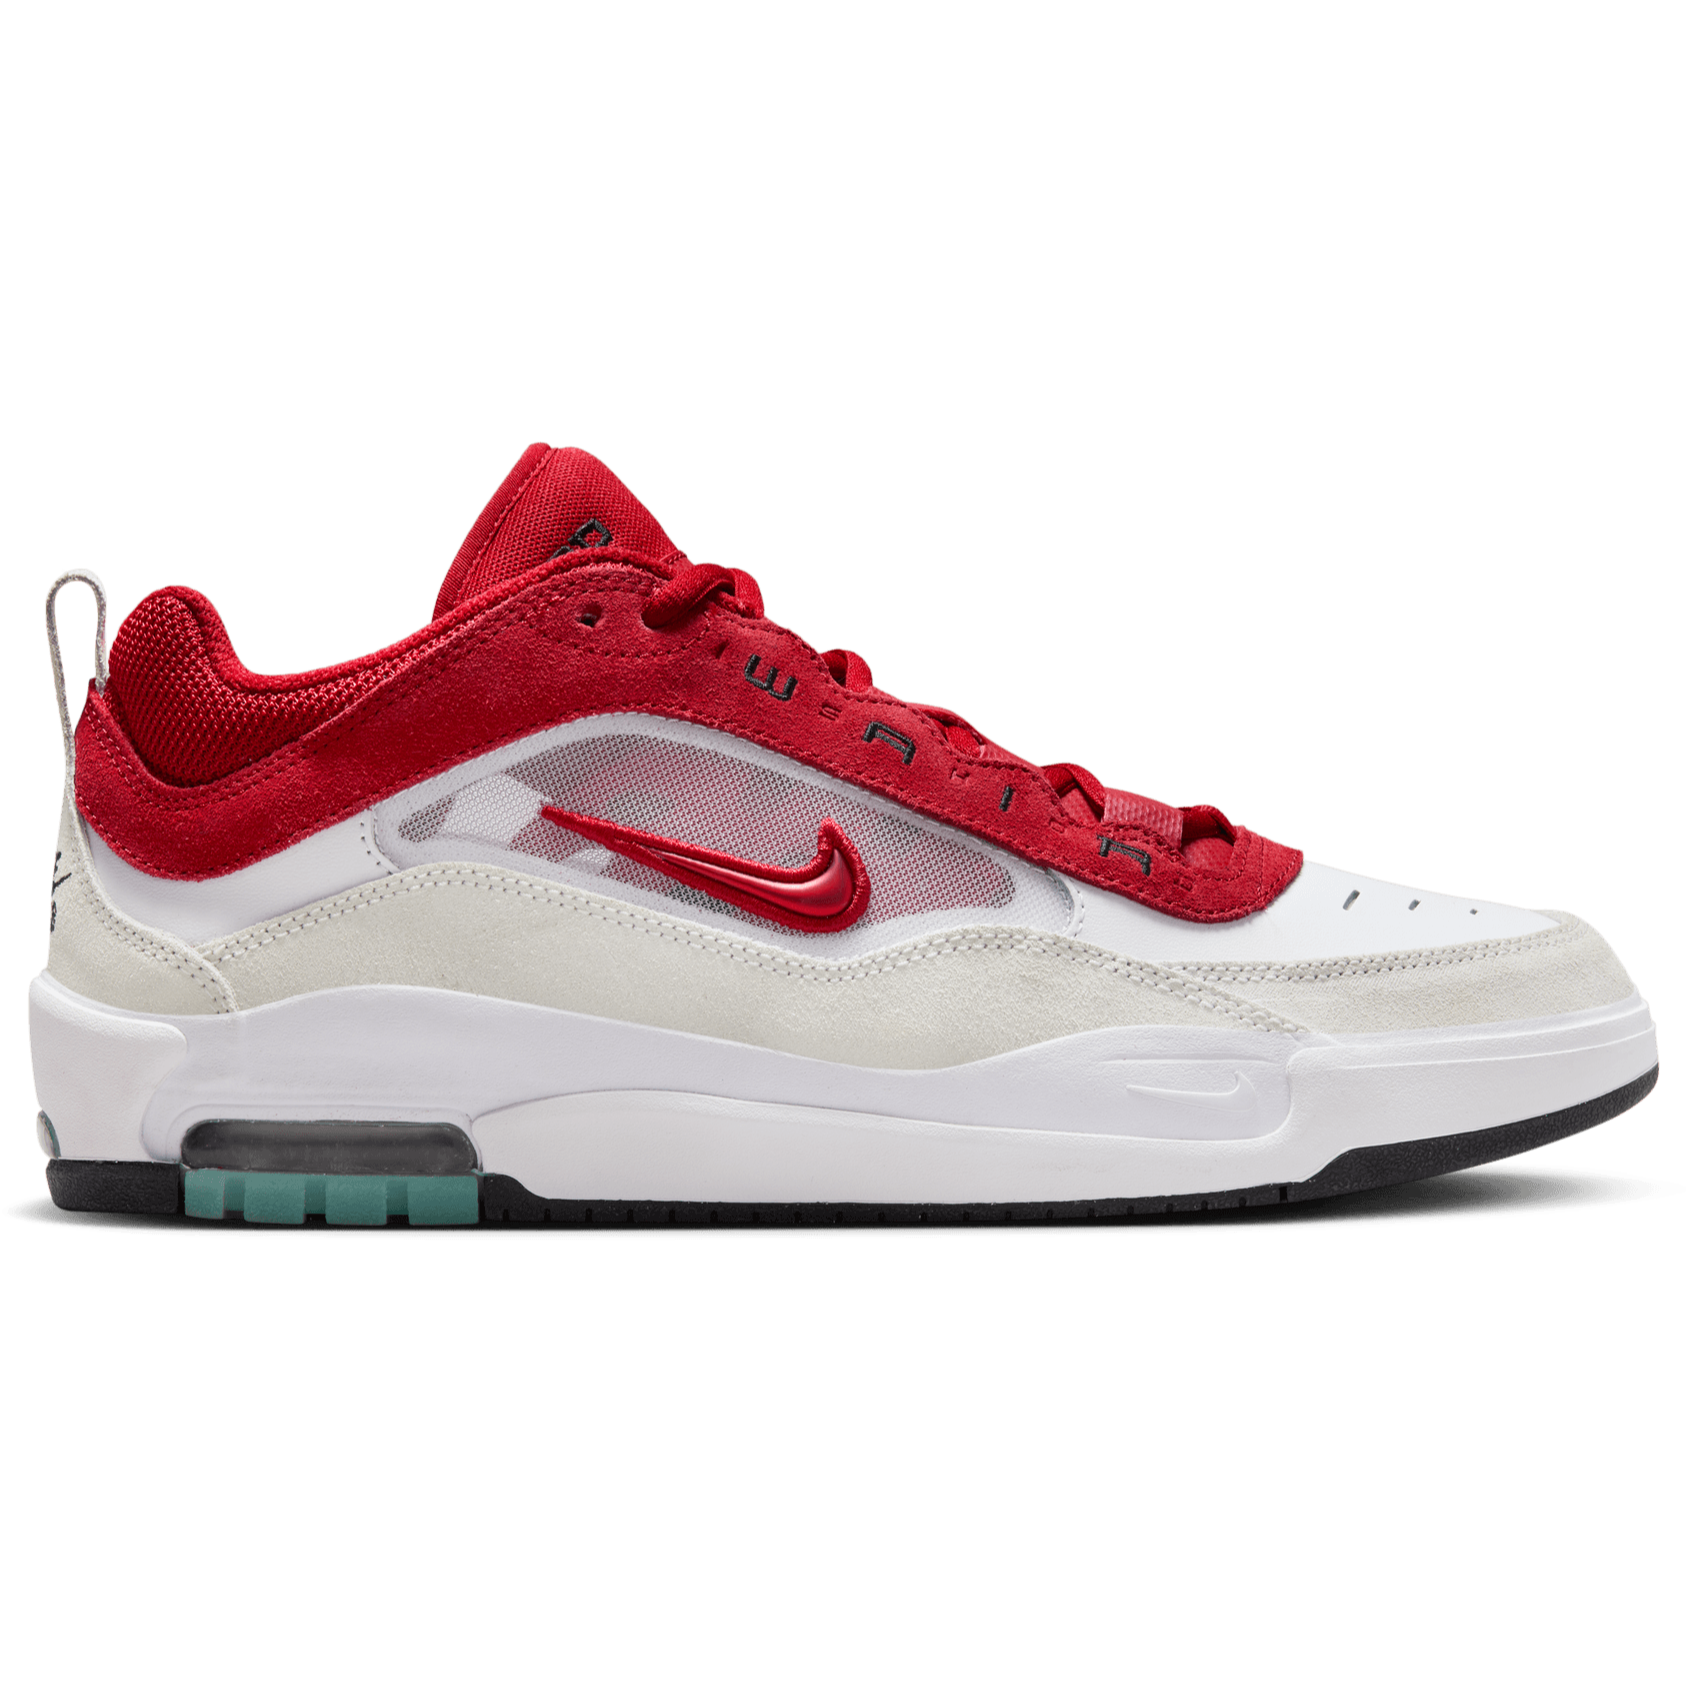 White/Varsity Red Air Max Ishod Wair Nike SB Skate Shoe